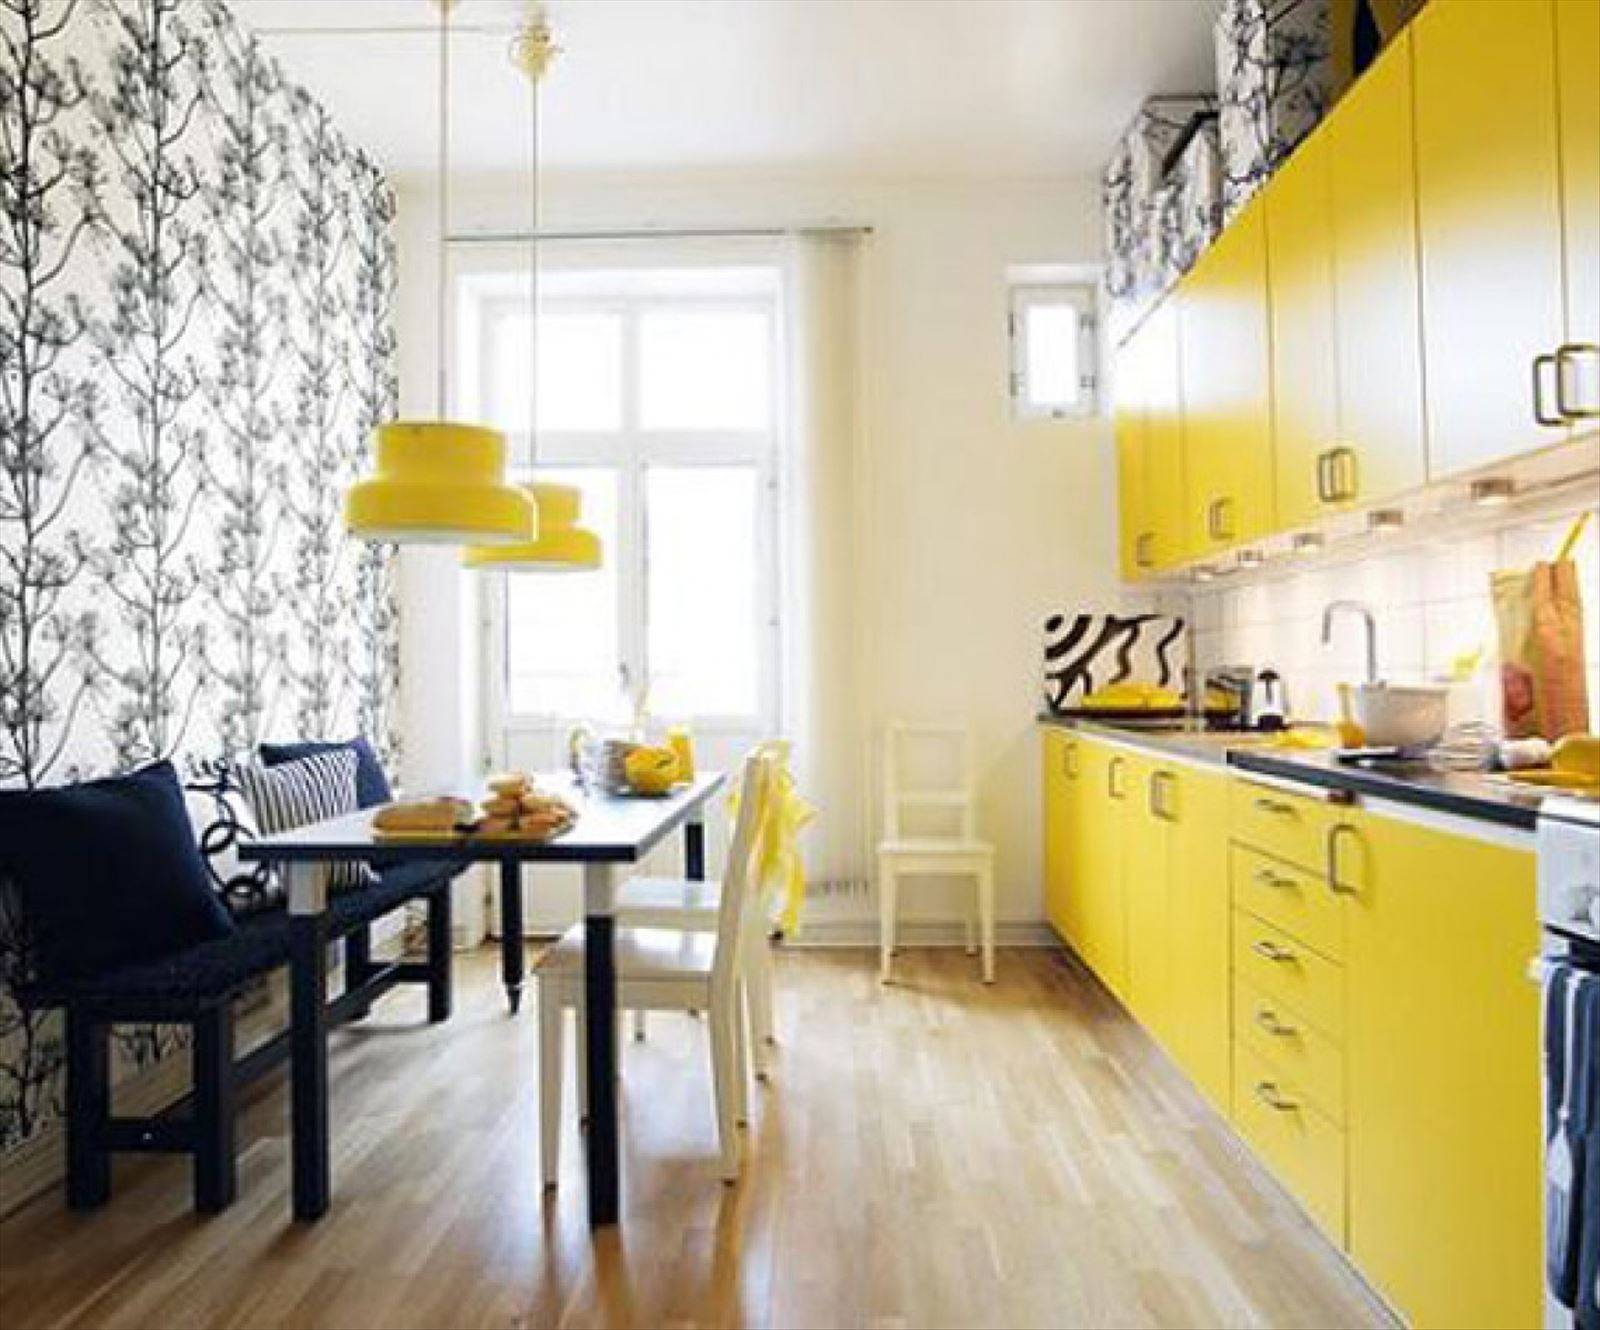 Бело желтая кухня. Желтая кухня икеа. Кухня икеа серо желтая. Желтый цвет в интерьере кухни. Кухня в желтом цвете.